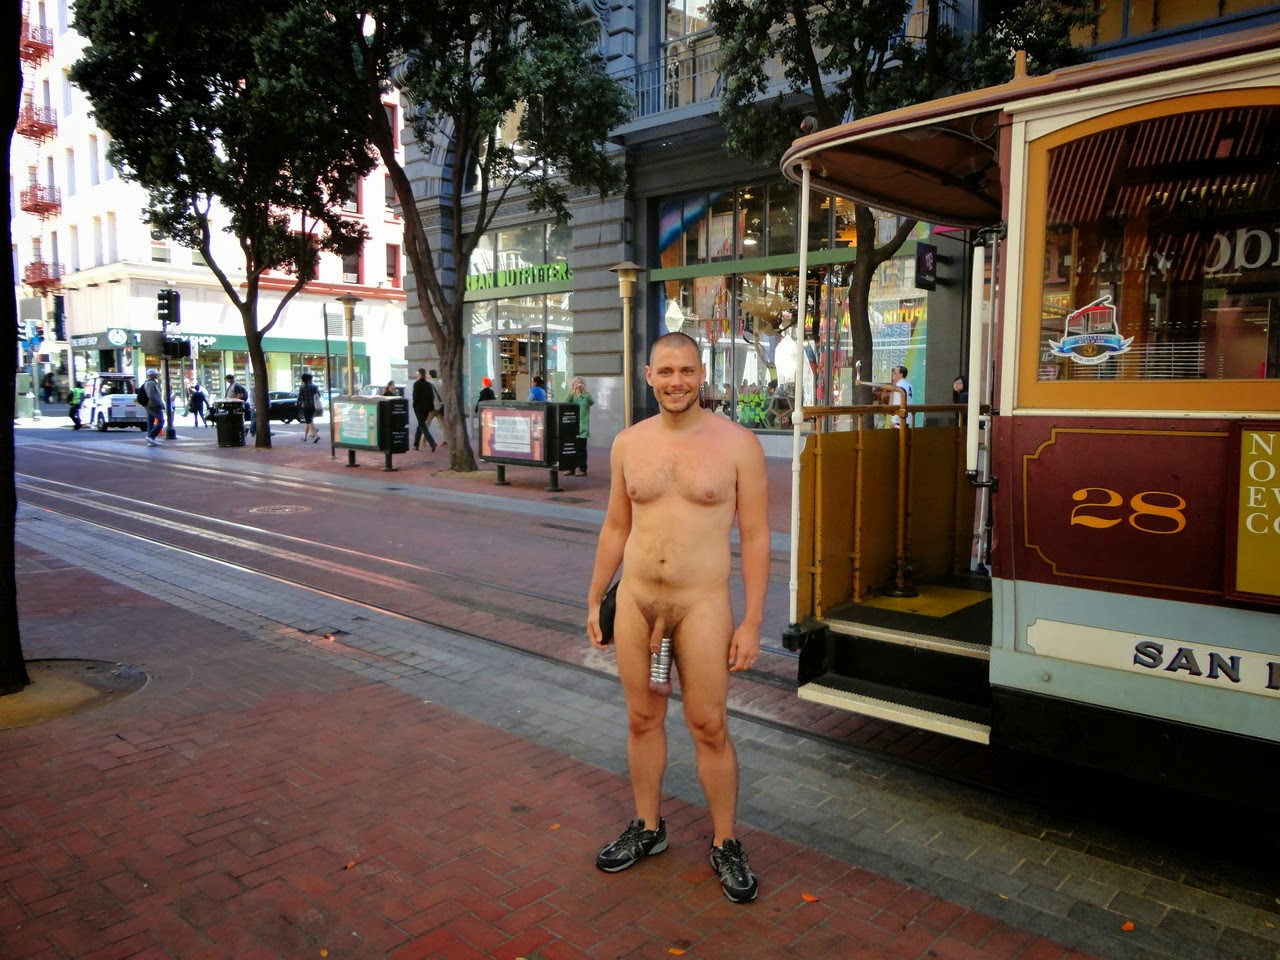 по городу гулял голый мужчина фото 29